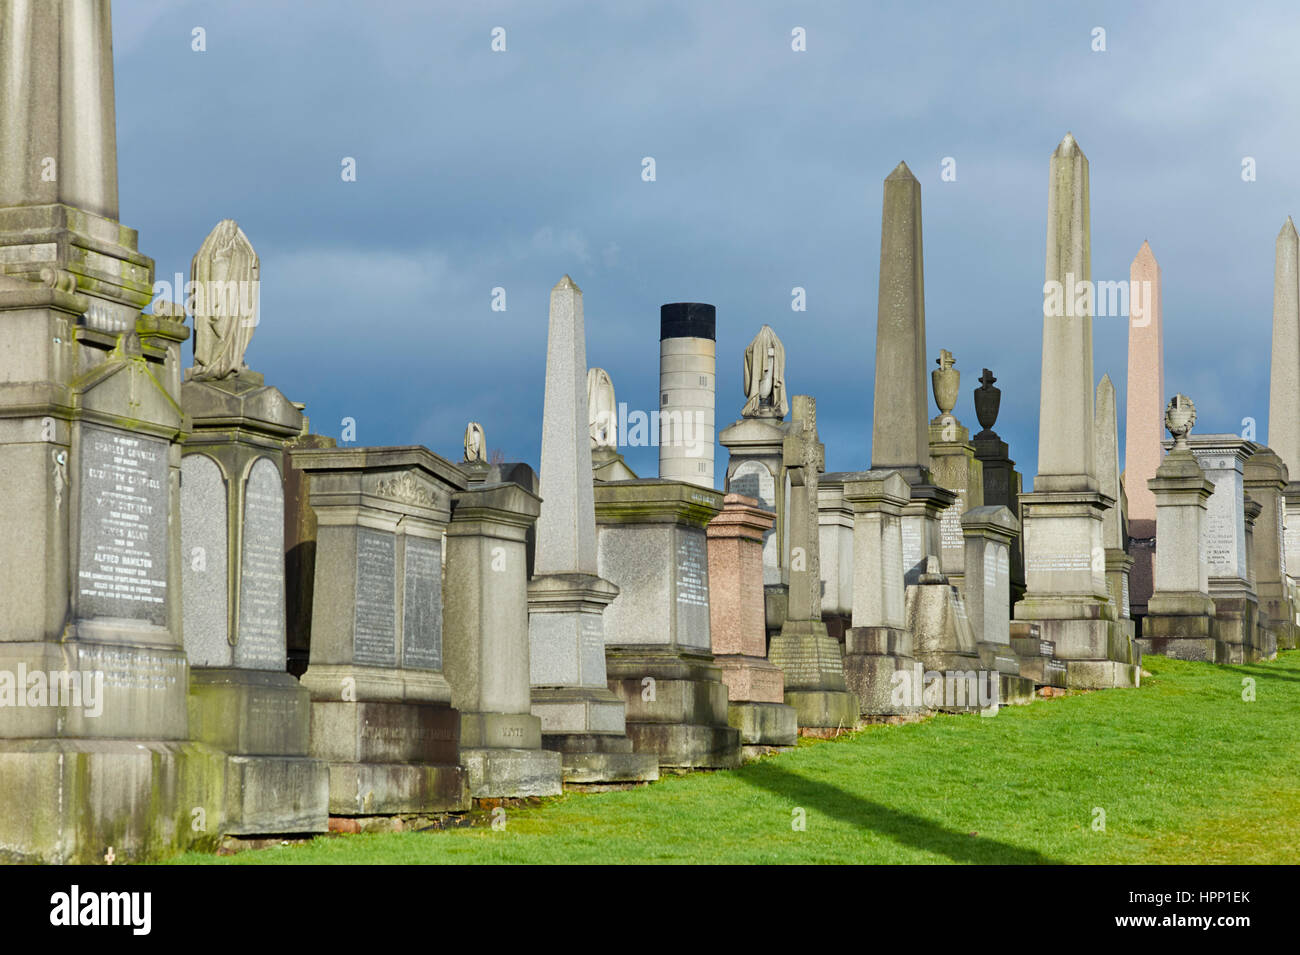 Monuments de la nécropole de Glasgow avec cheminées d'incinérateur Banque D'Images